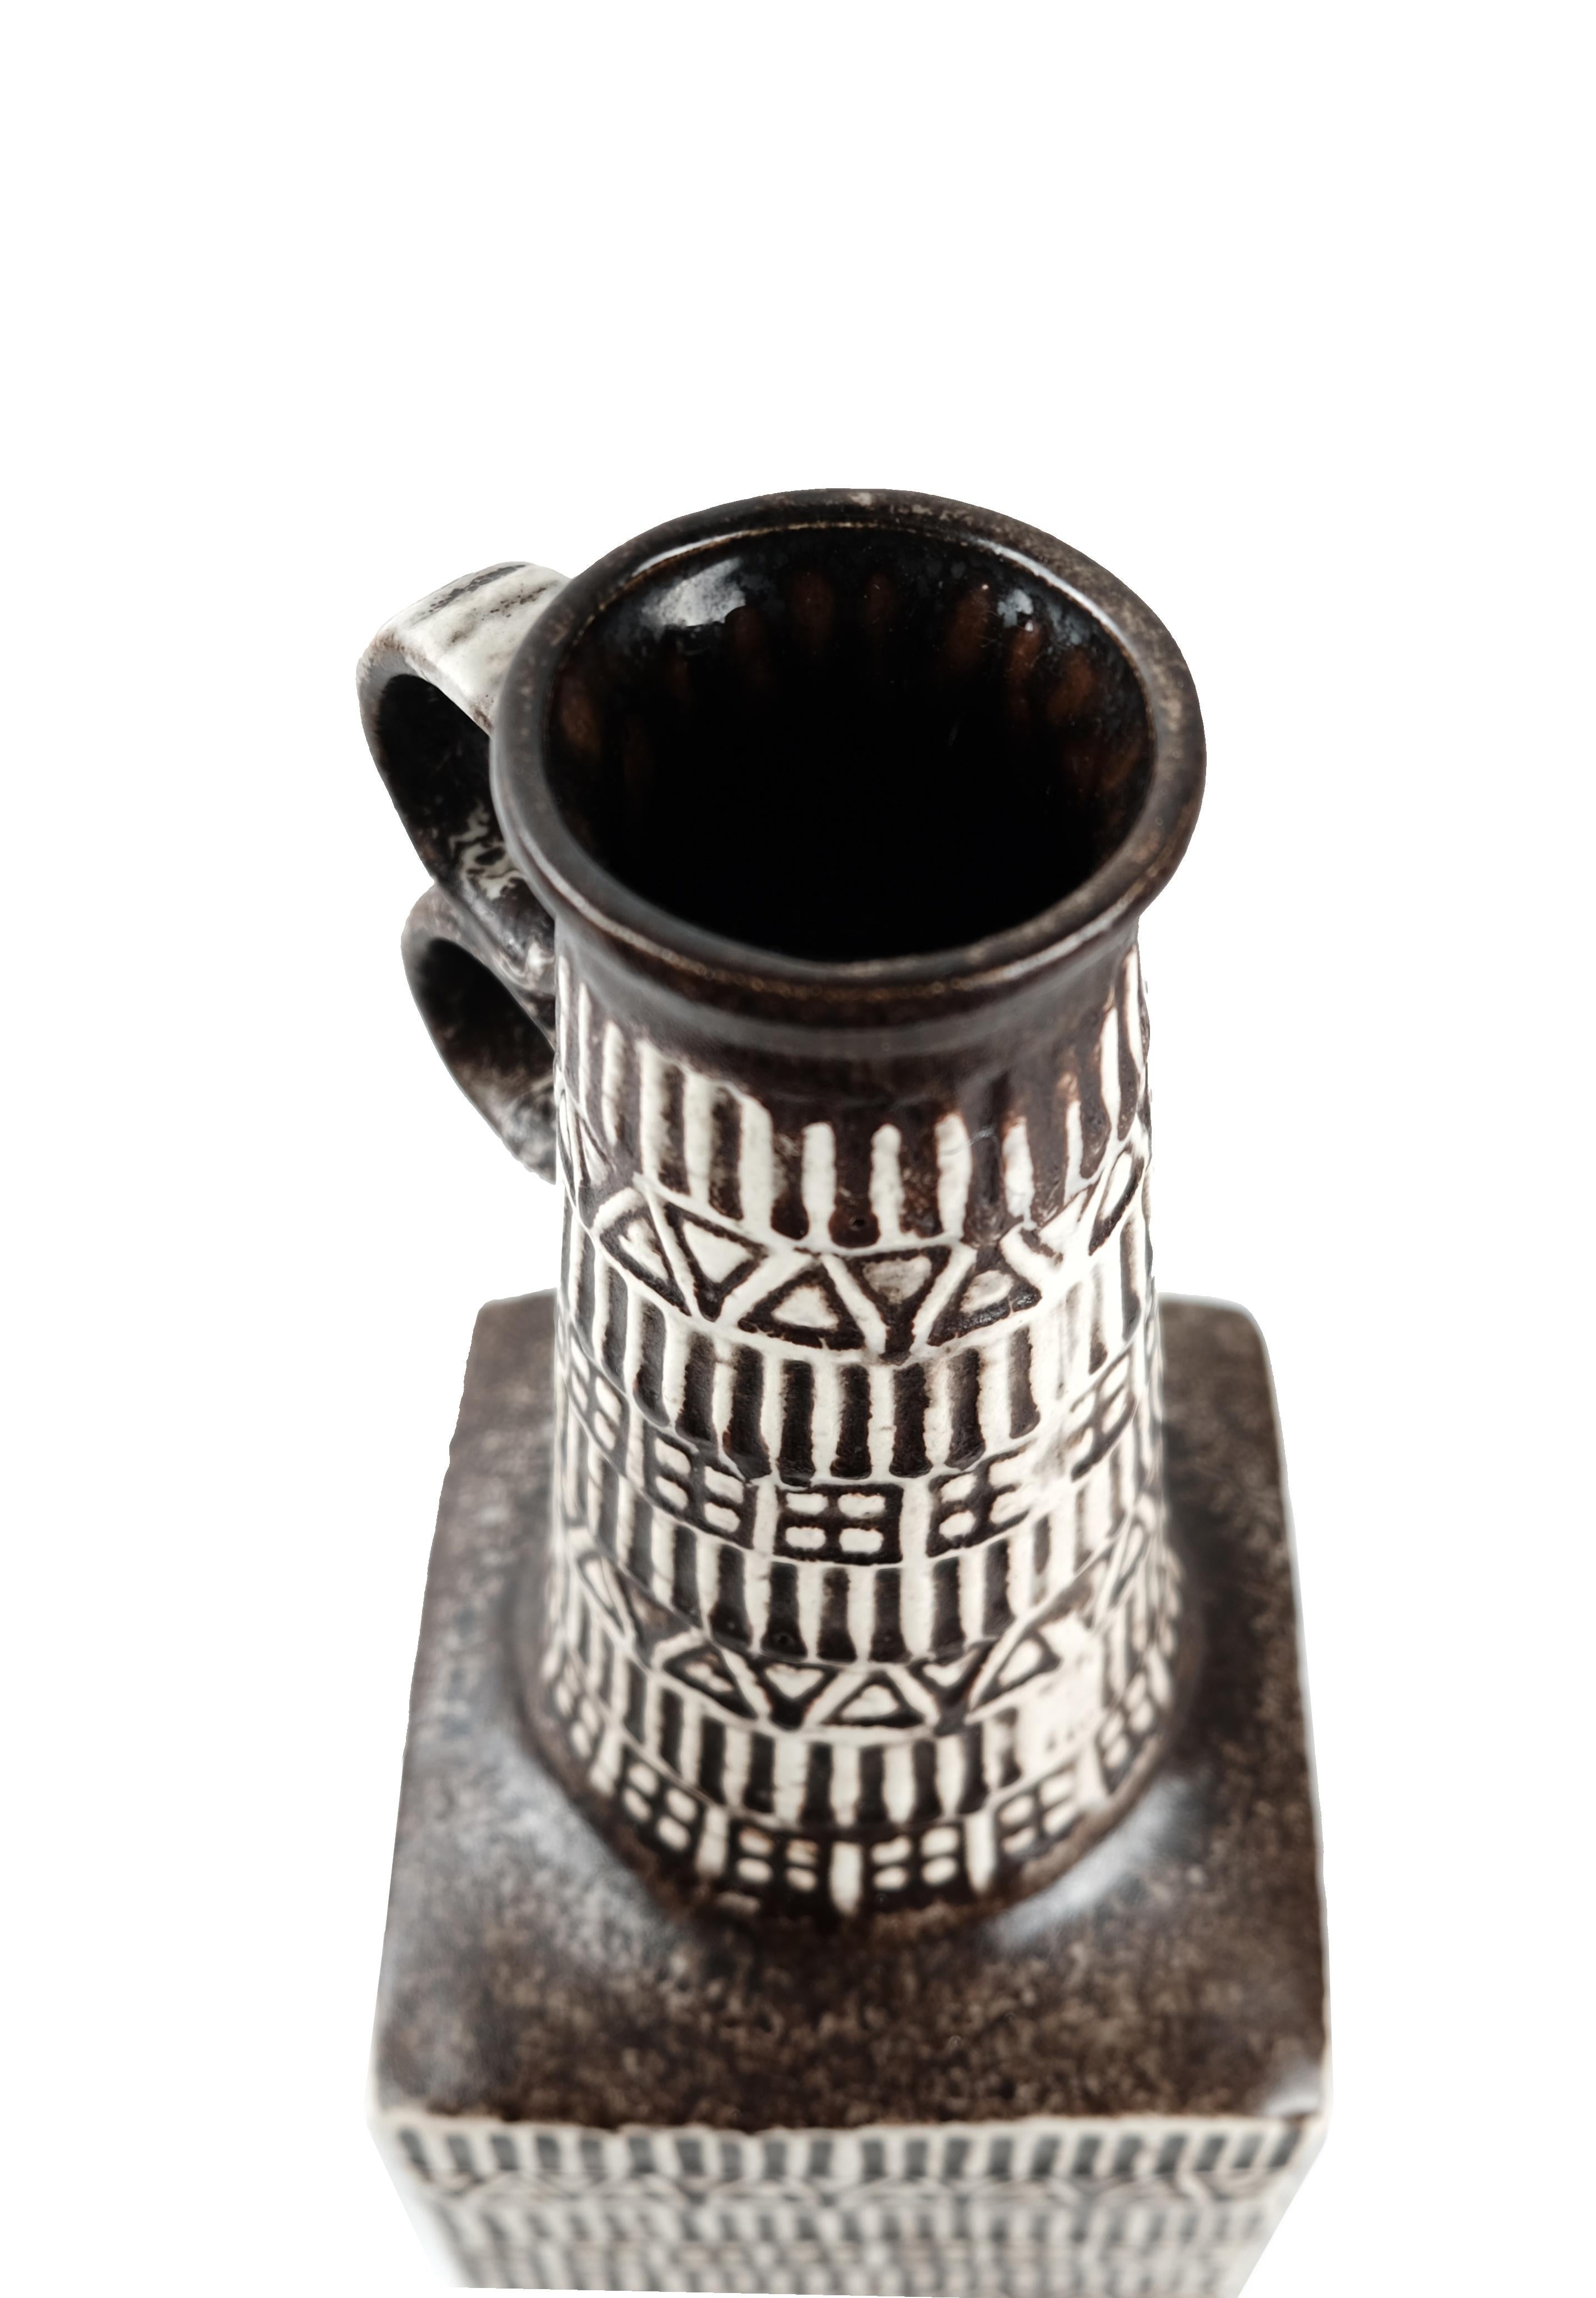 Schöne Bay Keramik Vase mit eingebettetem Runenmuster, entworfen von Bodo Mans. Dieses Muster war in den 1960er Jahren sehr beliebt. Diese hohe Vase ist in ausgezeichnetem Zustand und hat eine braune, matte Glasur. Diese Vase wurde Ende der 1960er